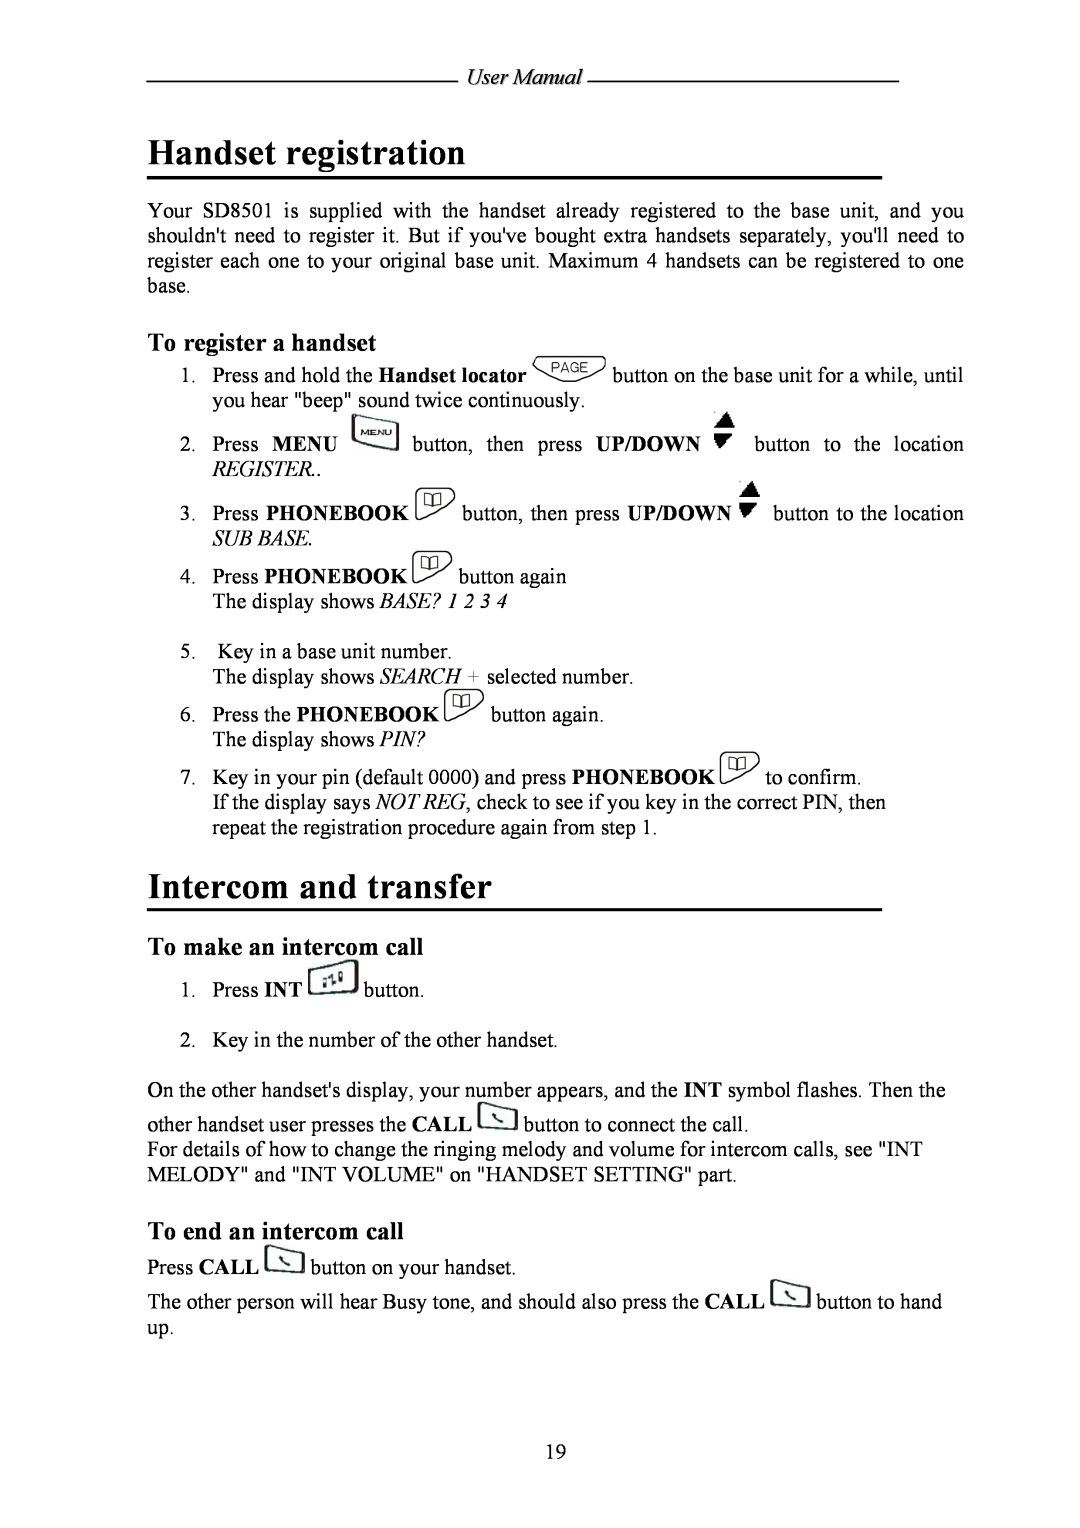 Shiro SD8501 user manual Handset registration, Intercom and transfer, To register a handset, To make an intercom call 